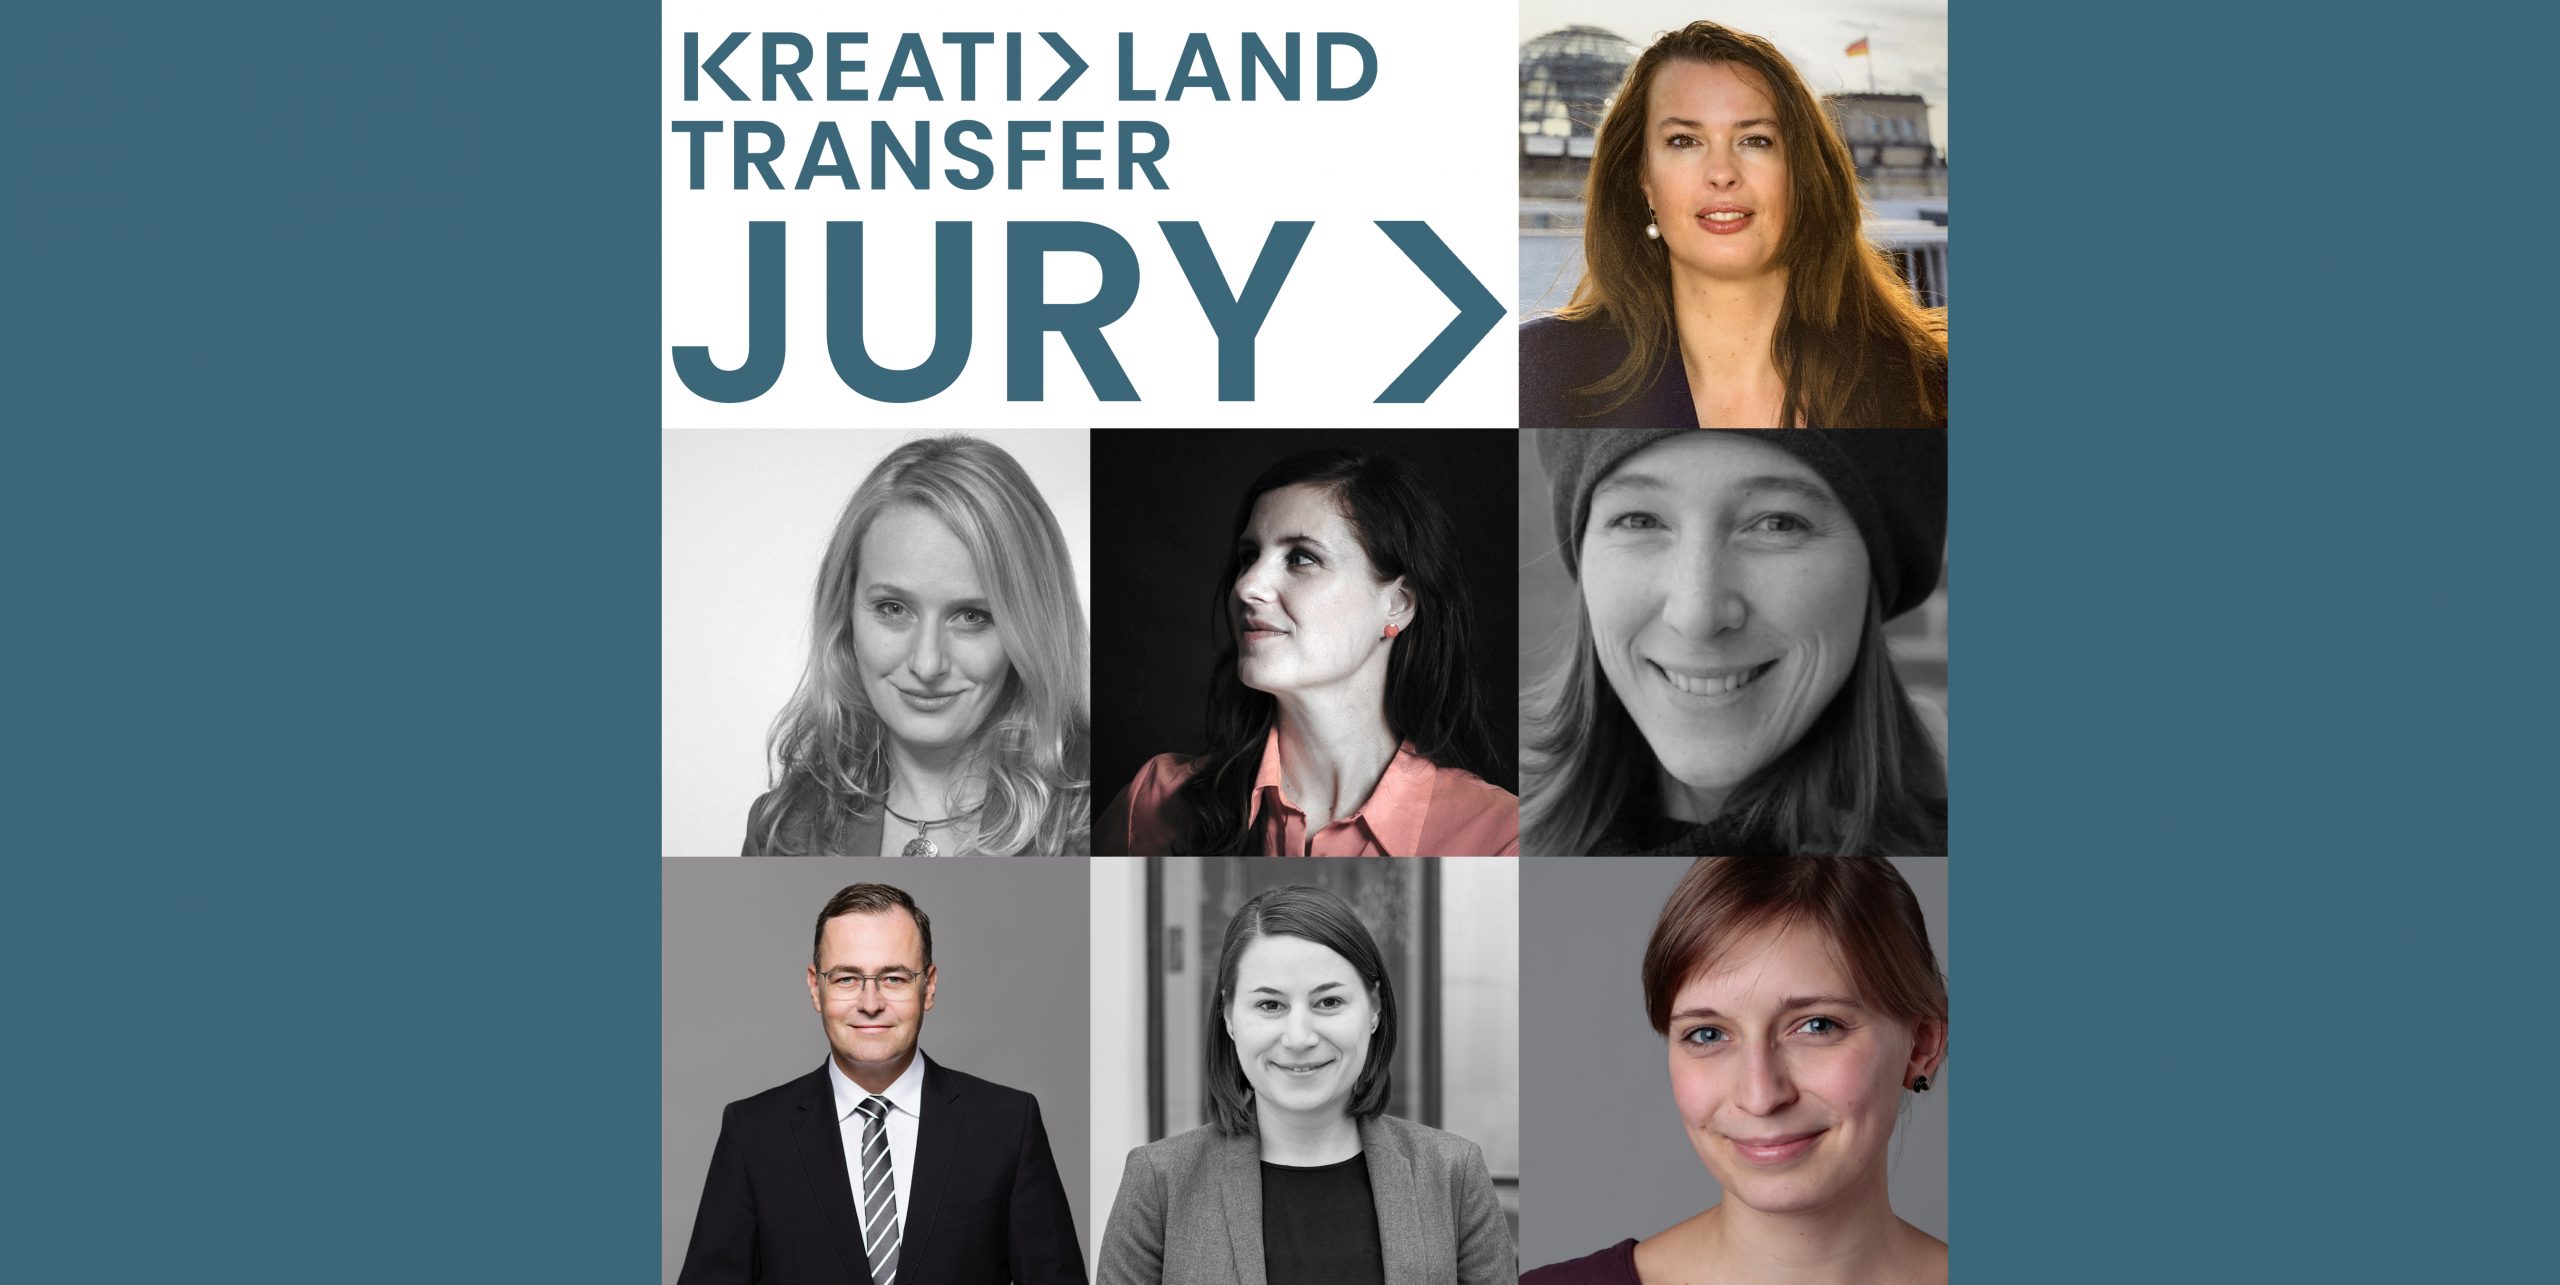 KreativLandTransfer Jury